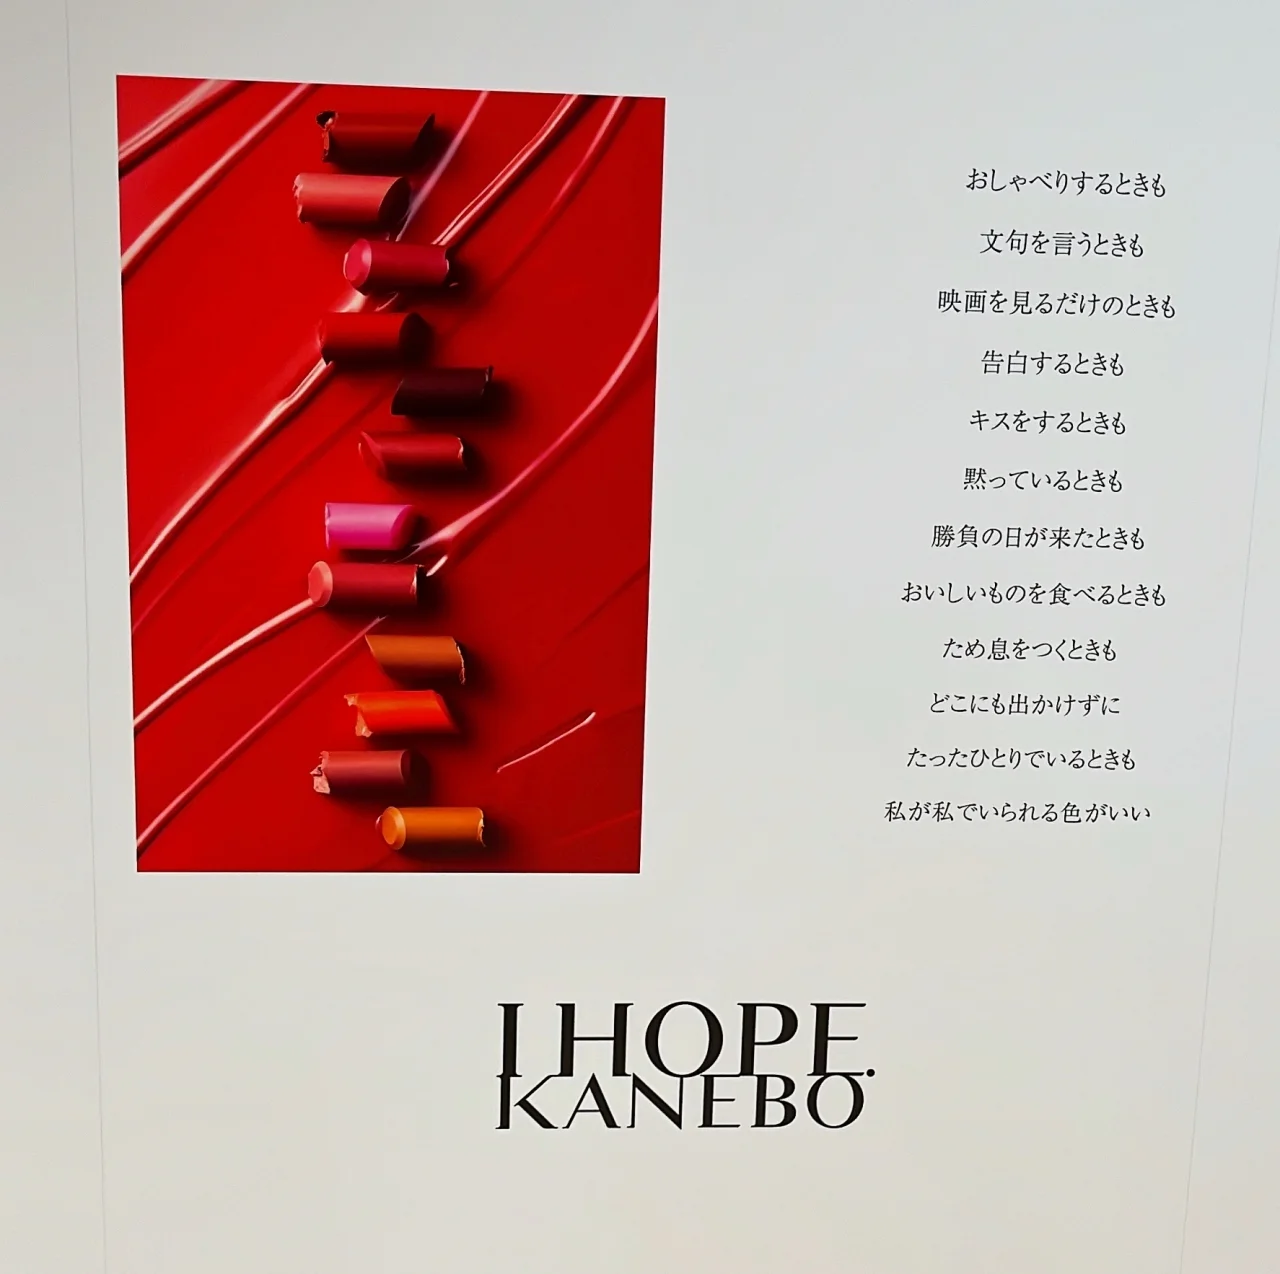 発表会でのKANEBOの新口紅のコンセプト展示